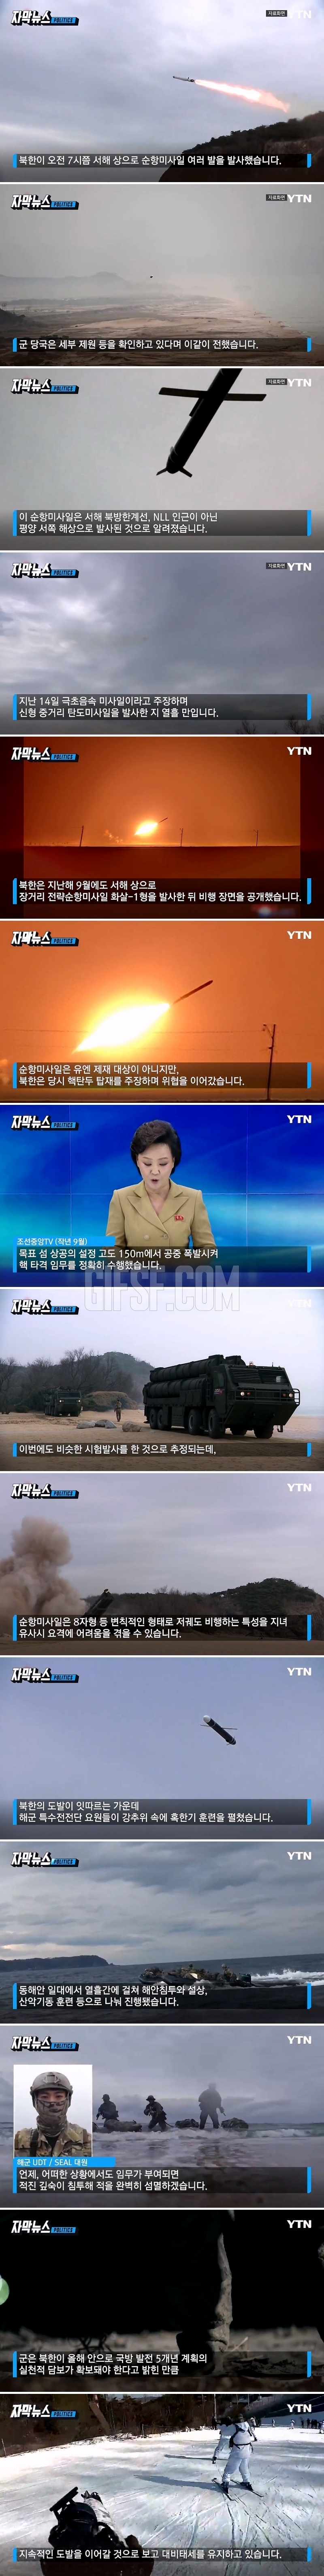 더 두려워진 북한의 무기 위협. 유사시 요격 어려울 수도.jpg